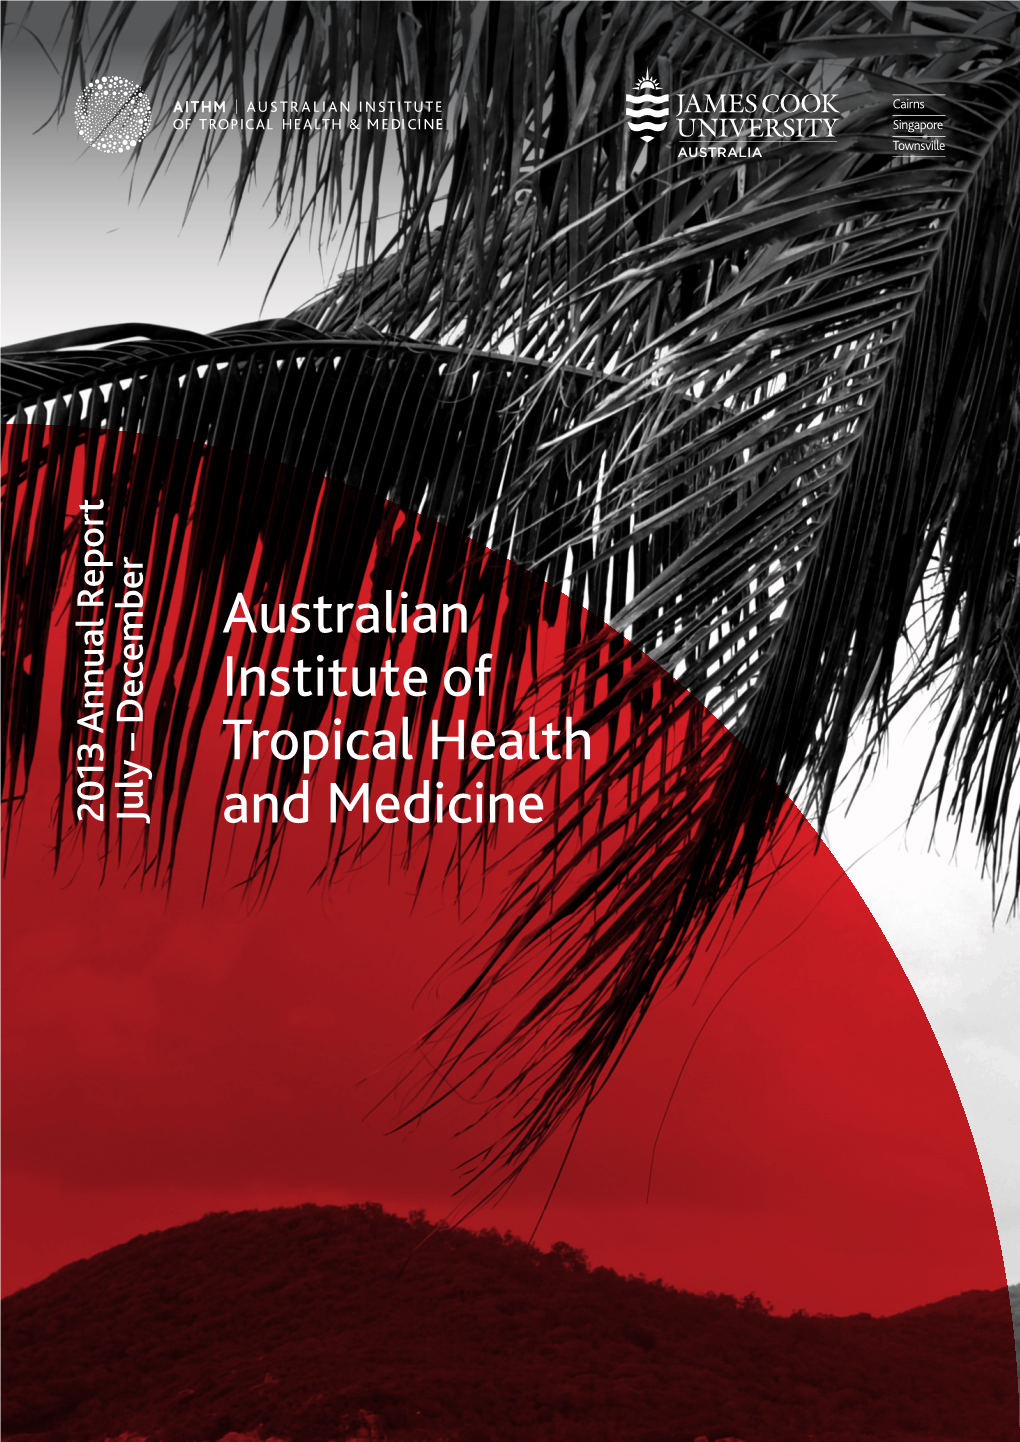 Australian Institute of Tropical Health and Medicine, JCU